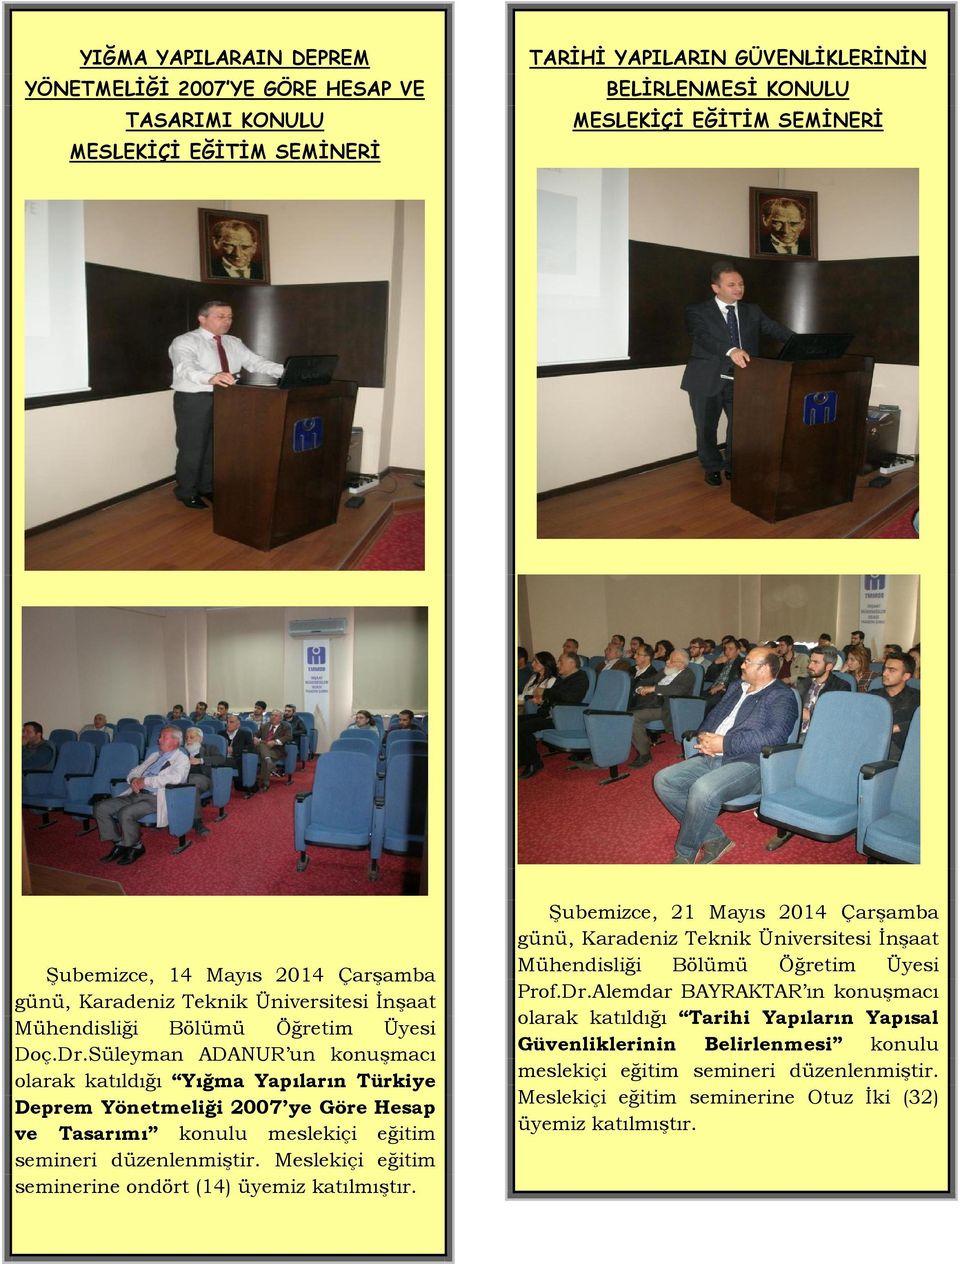 Süleyman ADANUR un konuşmacı olarak katıldığı Yığma Yapıların Türkiye Deprem Yönetmeliği 2007 ye Göre Hesap ve Tasarımı konulu meslekiçi eğitim semineri düzenlenmiştir.